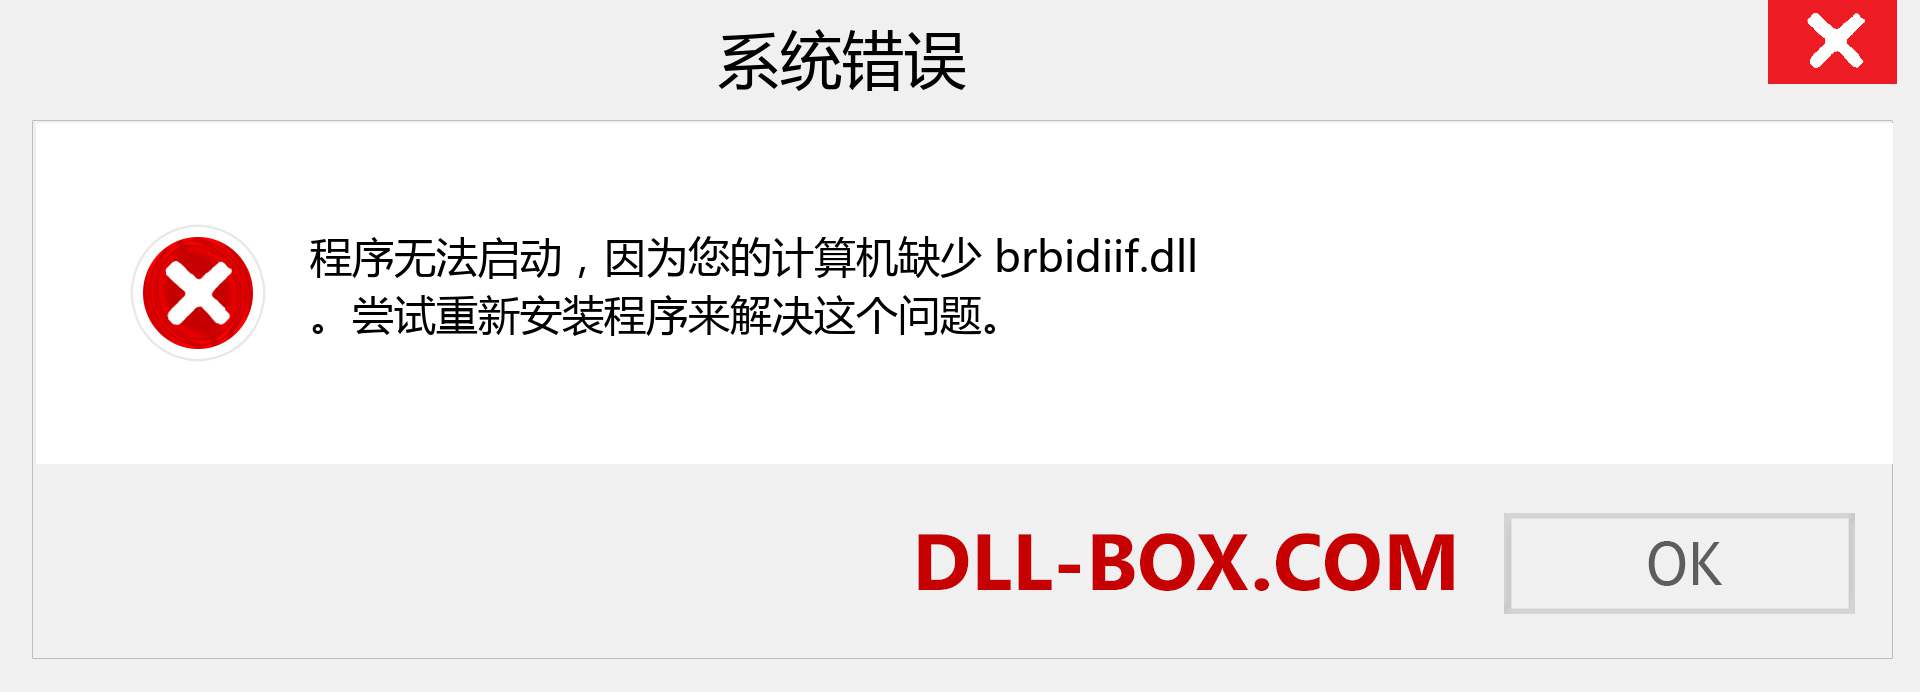 brbidiif.dll 文件丢失？。 适用于 Windows 7、8、10 的下载 - 修复 Windows、照片、图像上的 brbidiif dll 丢失错误